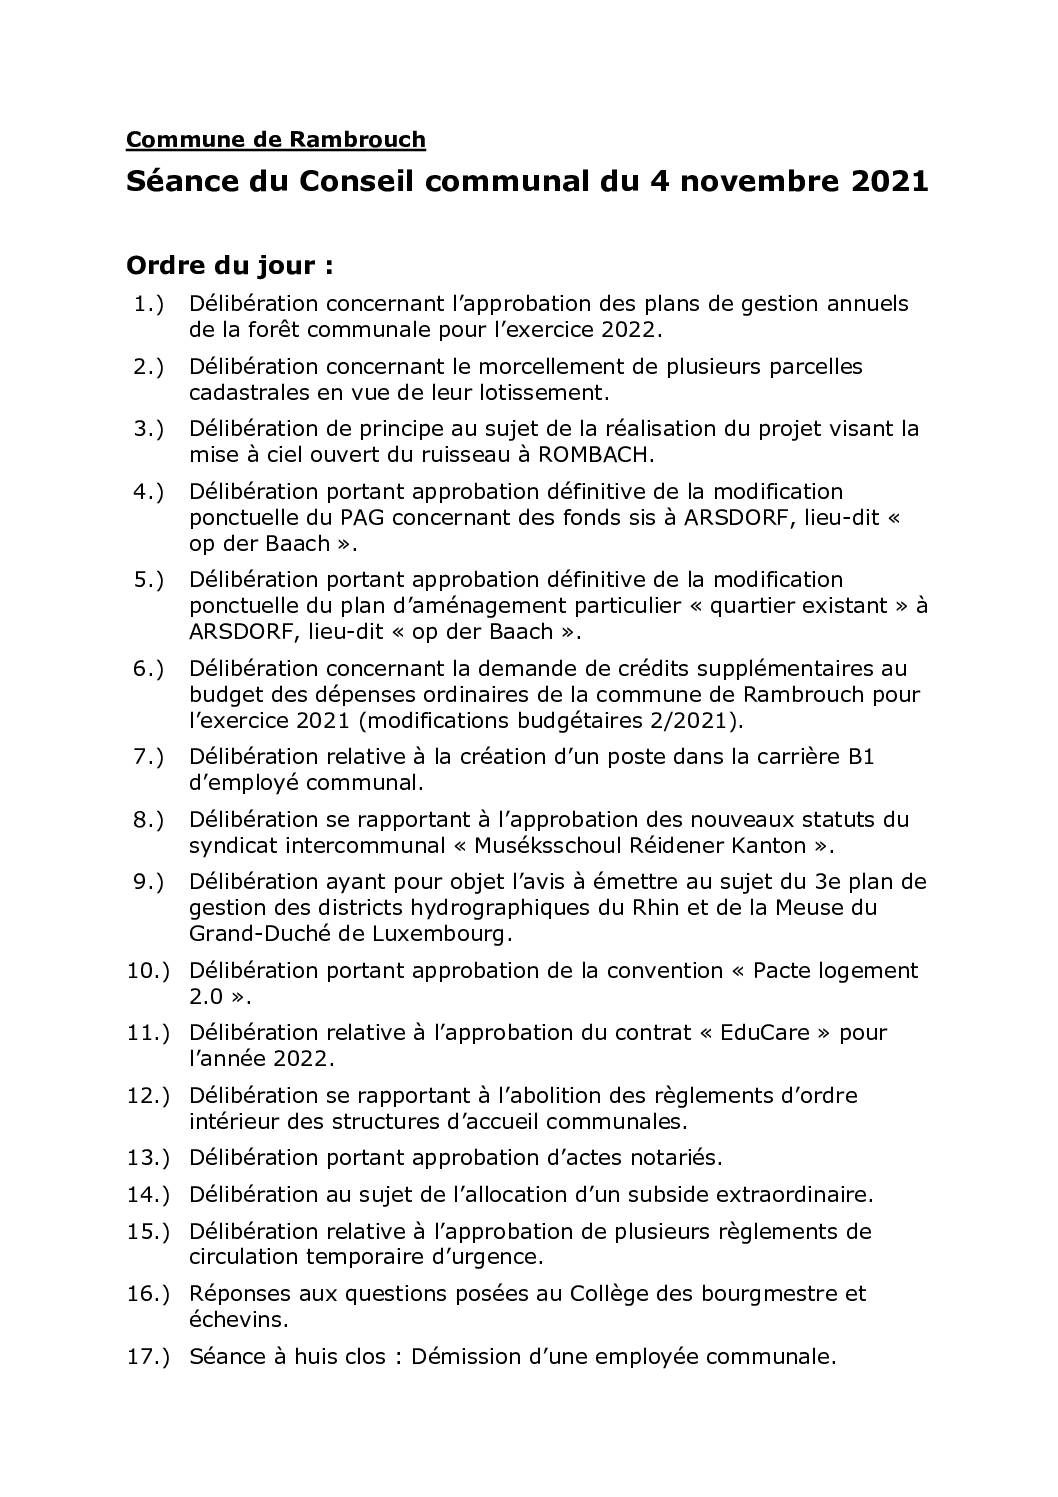 Rapport du conseil communal du 04.11.2021 FR